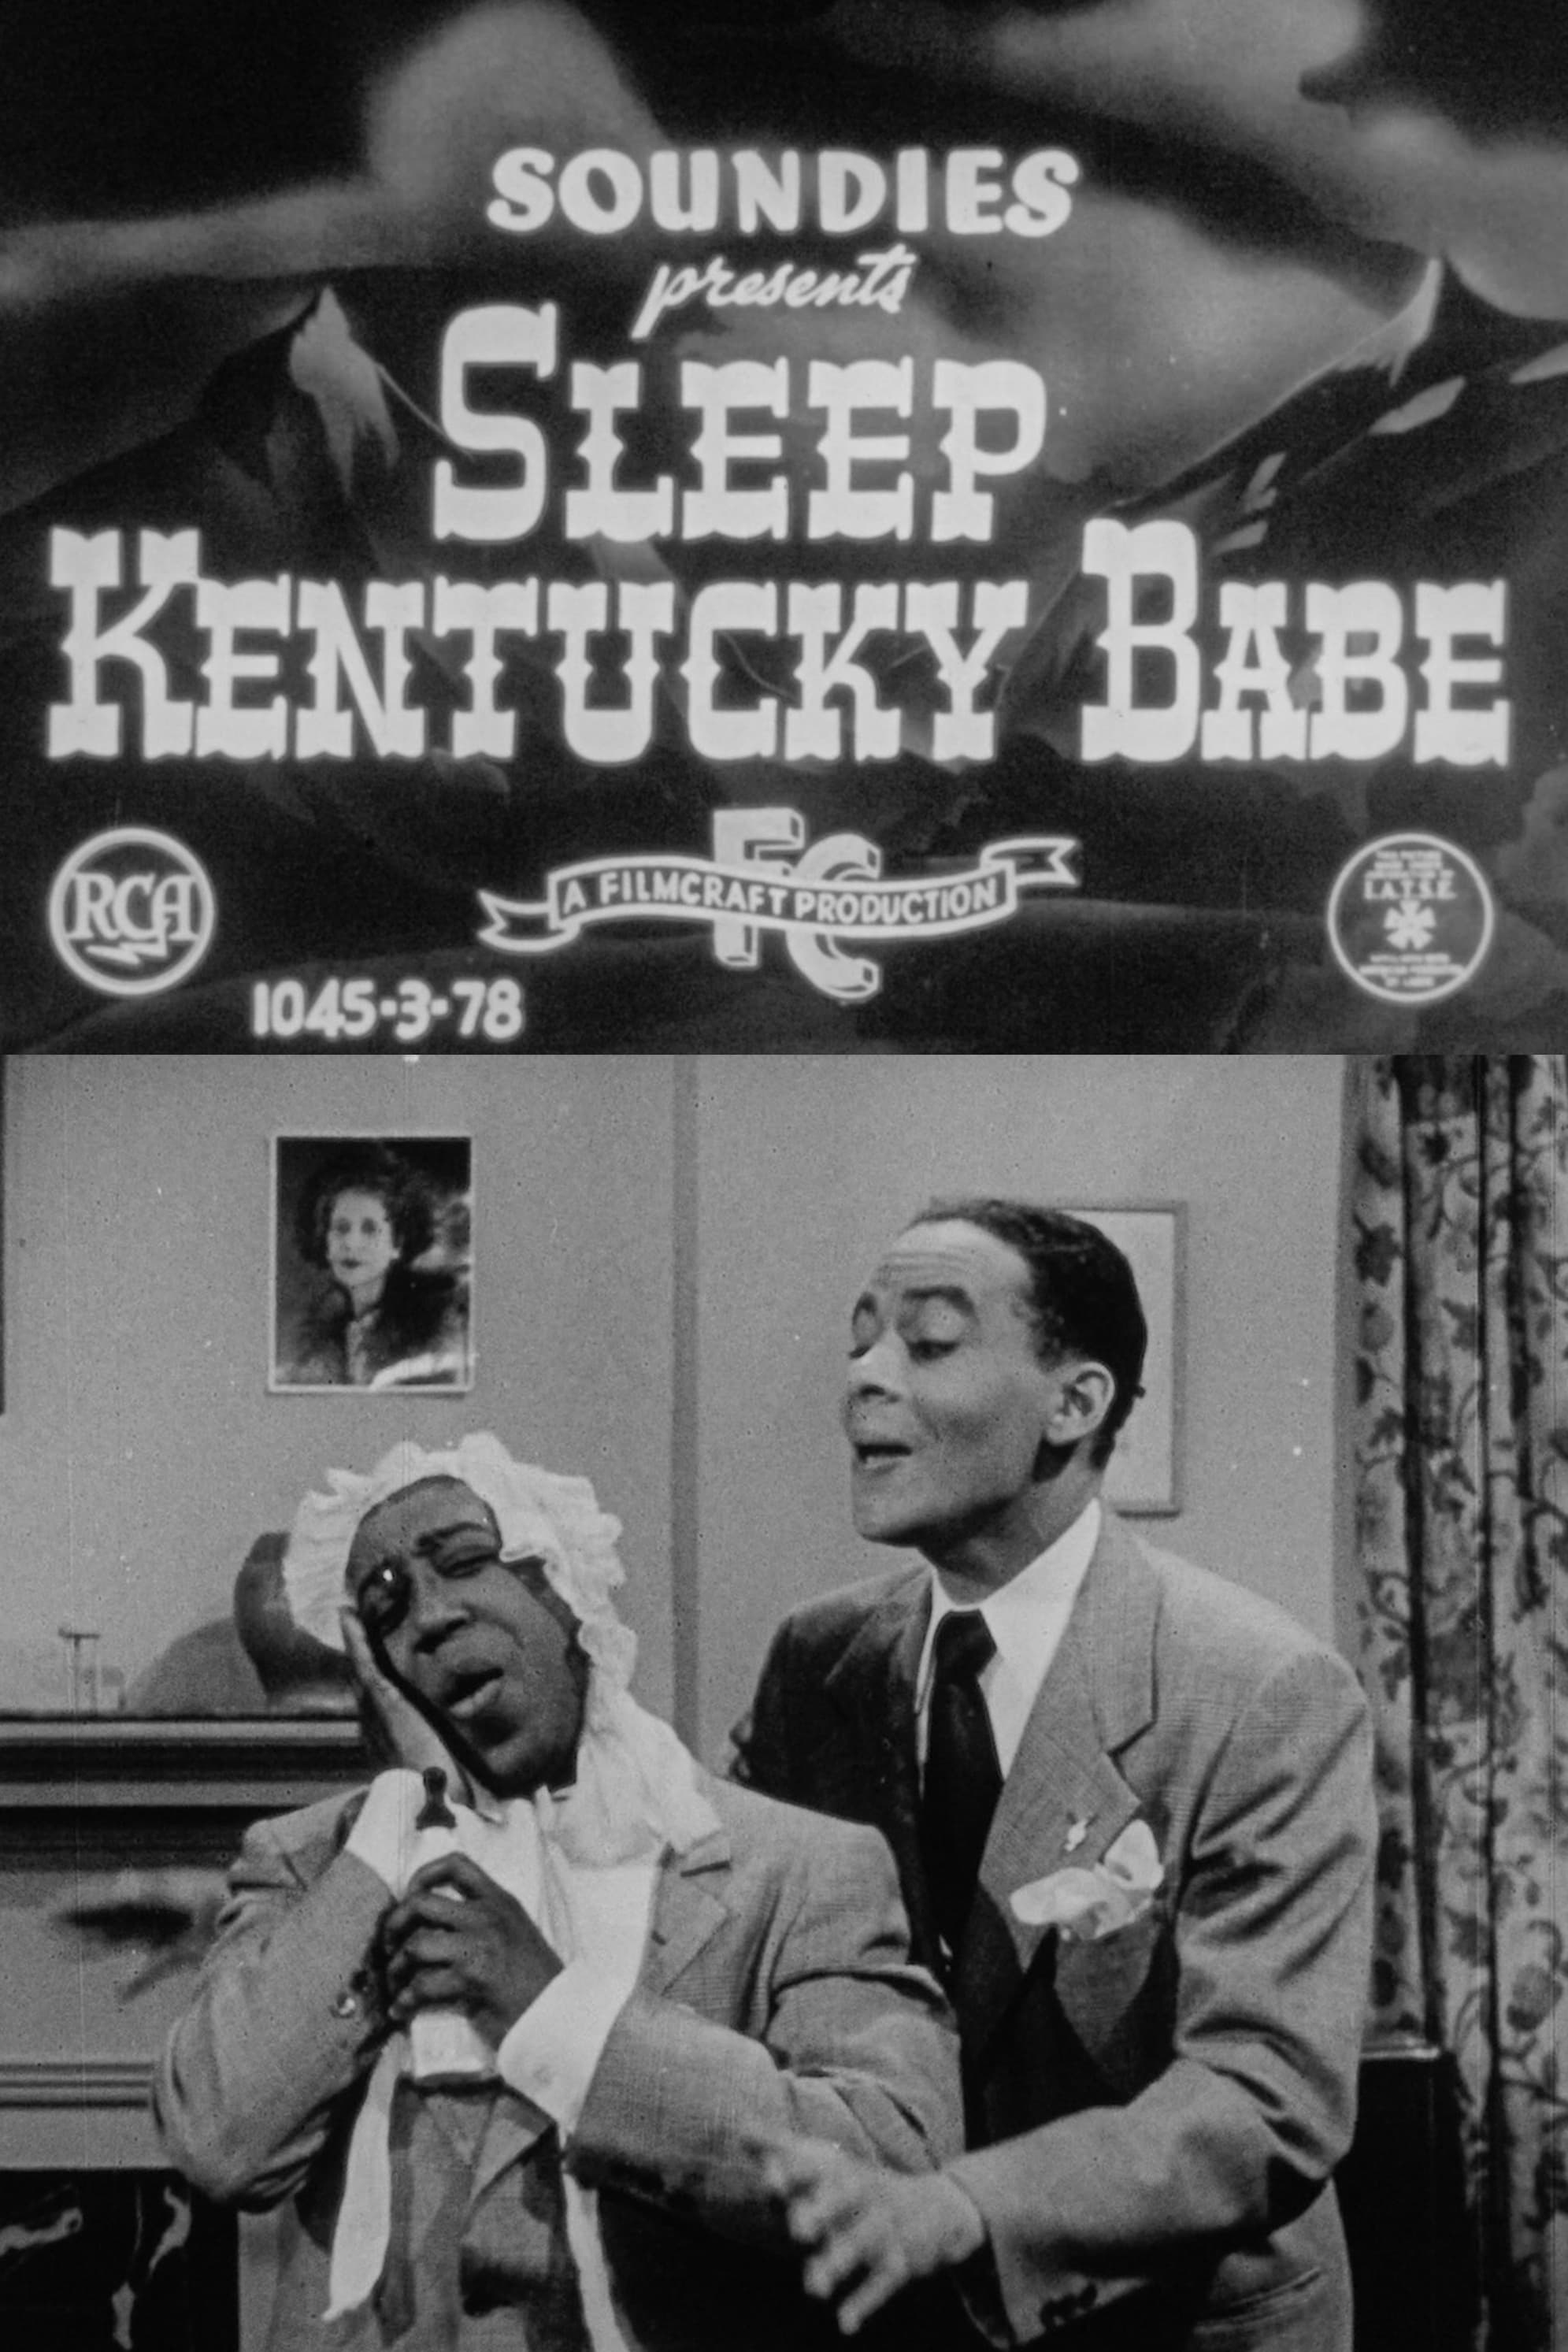 Sleep Kentucky Babe